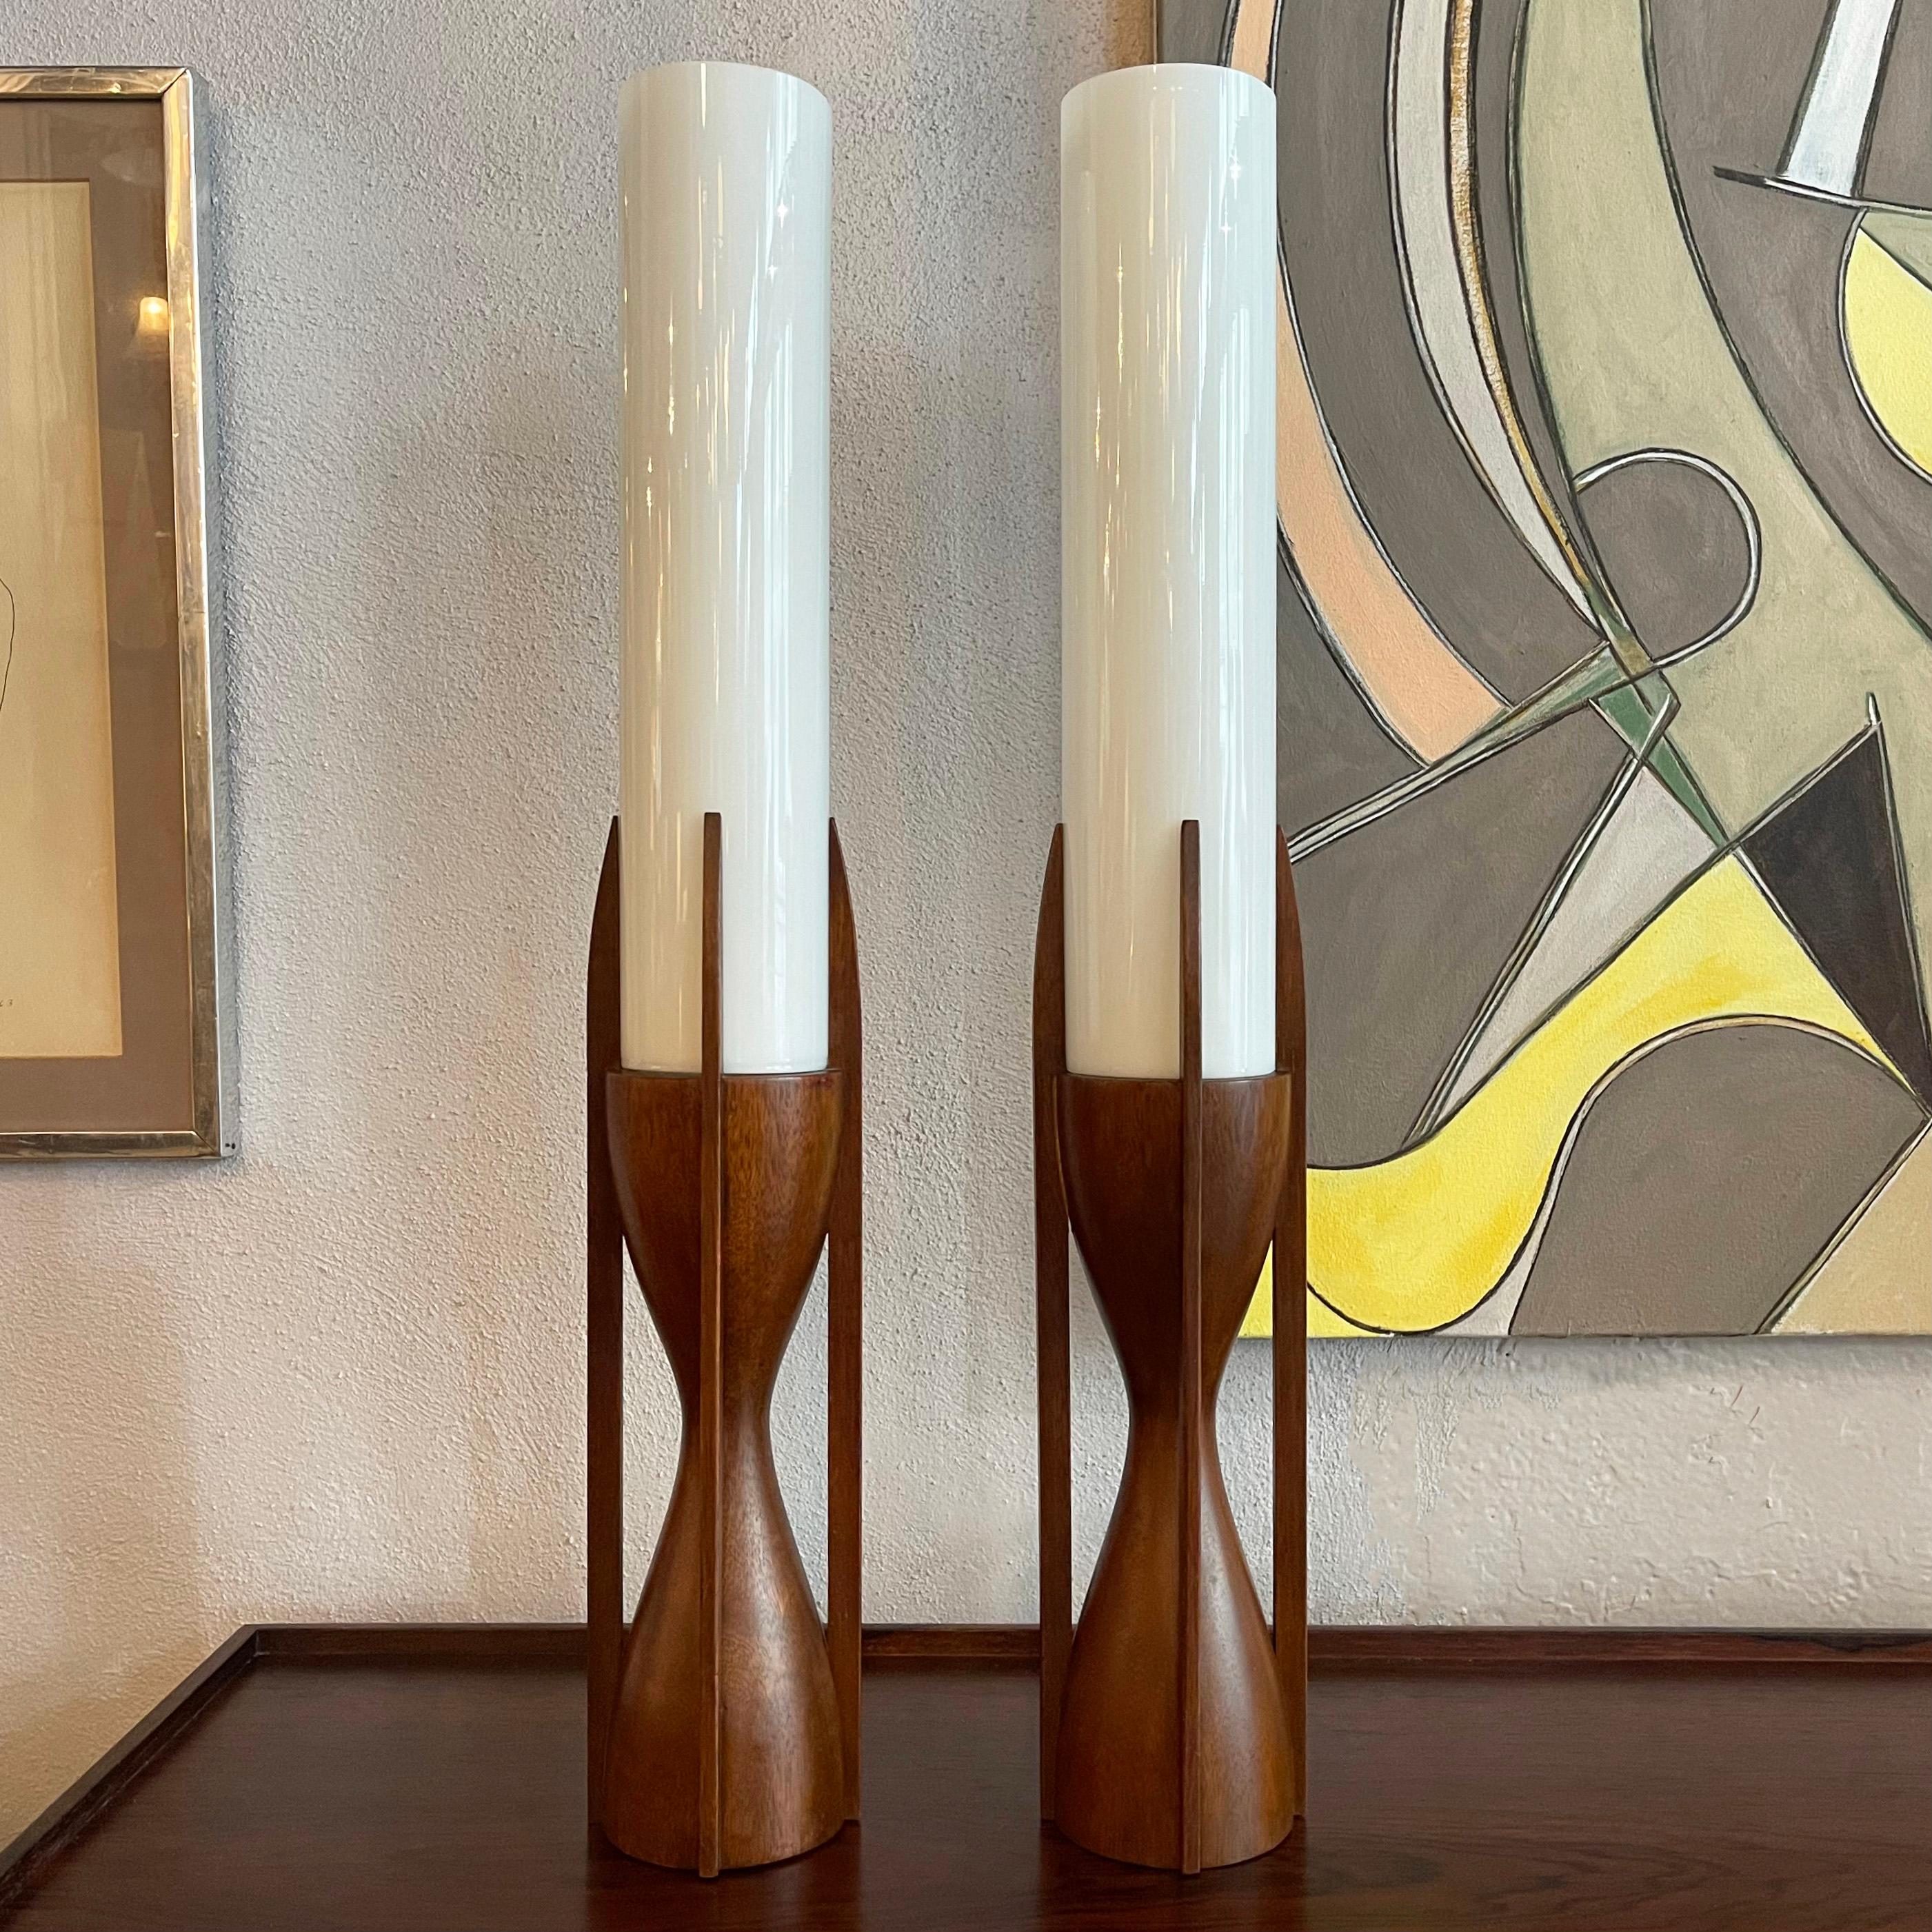 Impressionnante paire de lampes de table architecturales du milieu du siècle dernier par Byron Botker pour Modeline Lamp Co. Elles sont composées de bases sculptées en noyer avec des abat-jours cylindriques en verre au lait de 14 pouces de haut. Les